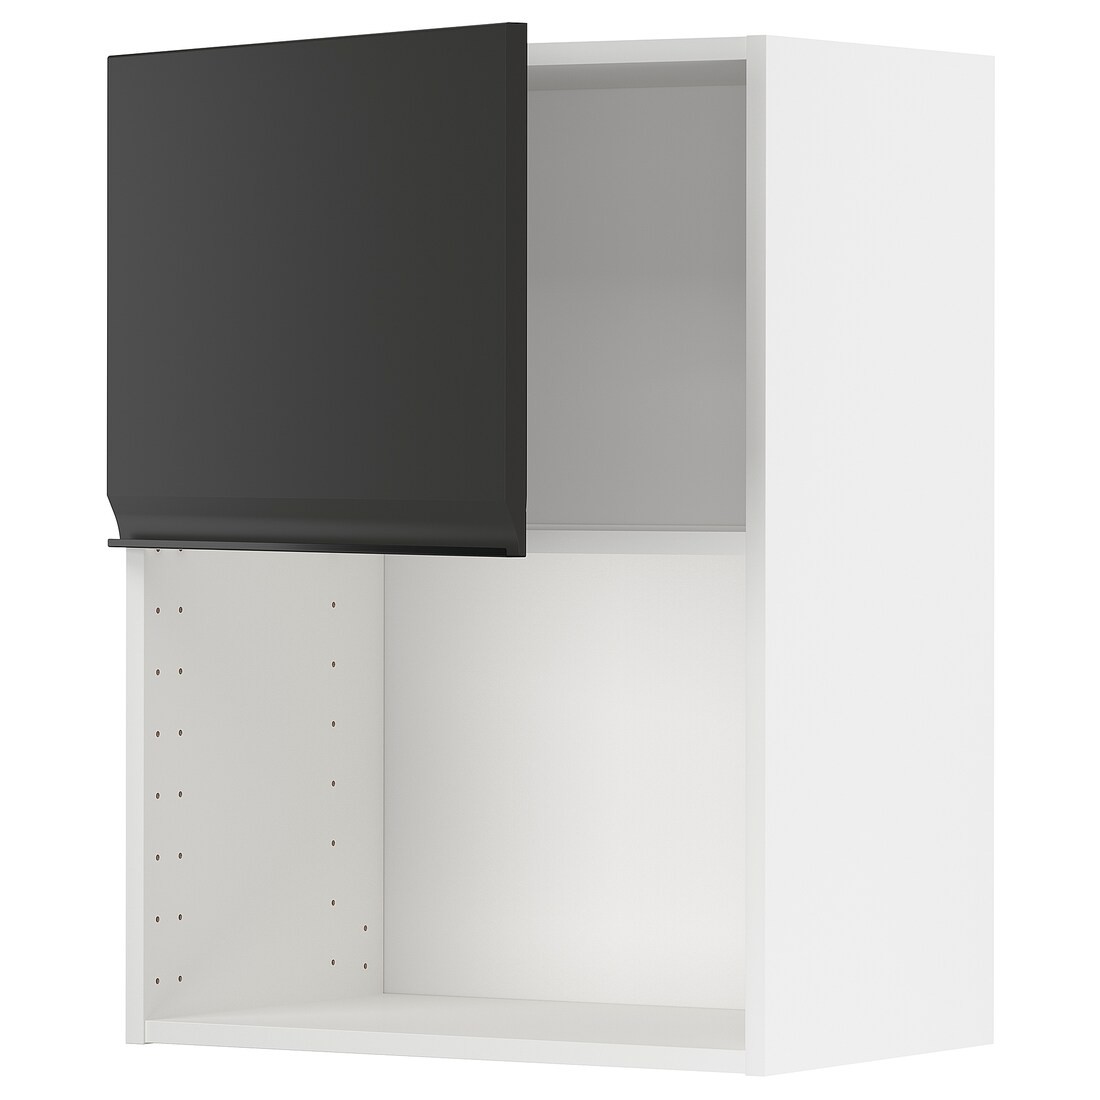 IKEA METOD МЕТОД Навесной шкаф для СВЧ-печи, белый / Upplöv матовый антрацит, 60x80 см 49493755 | 494.937.55